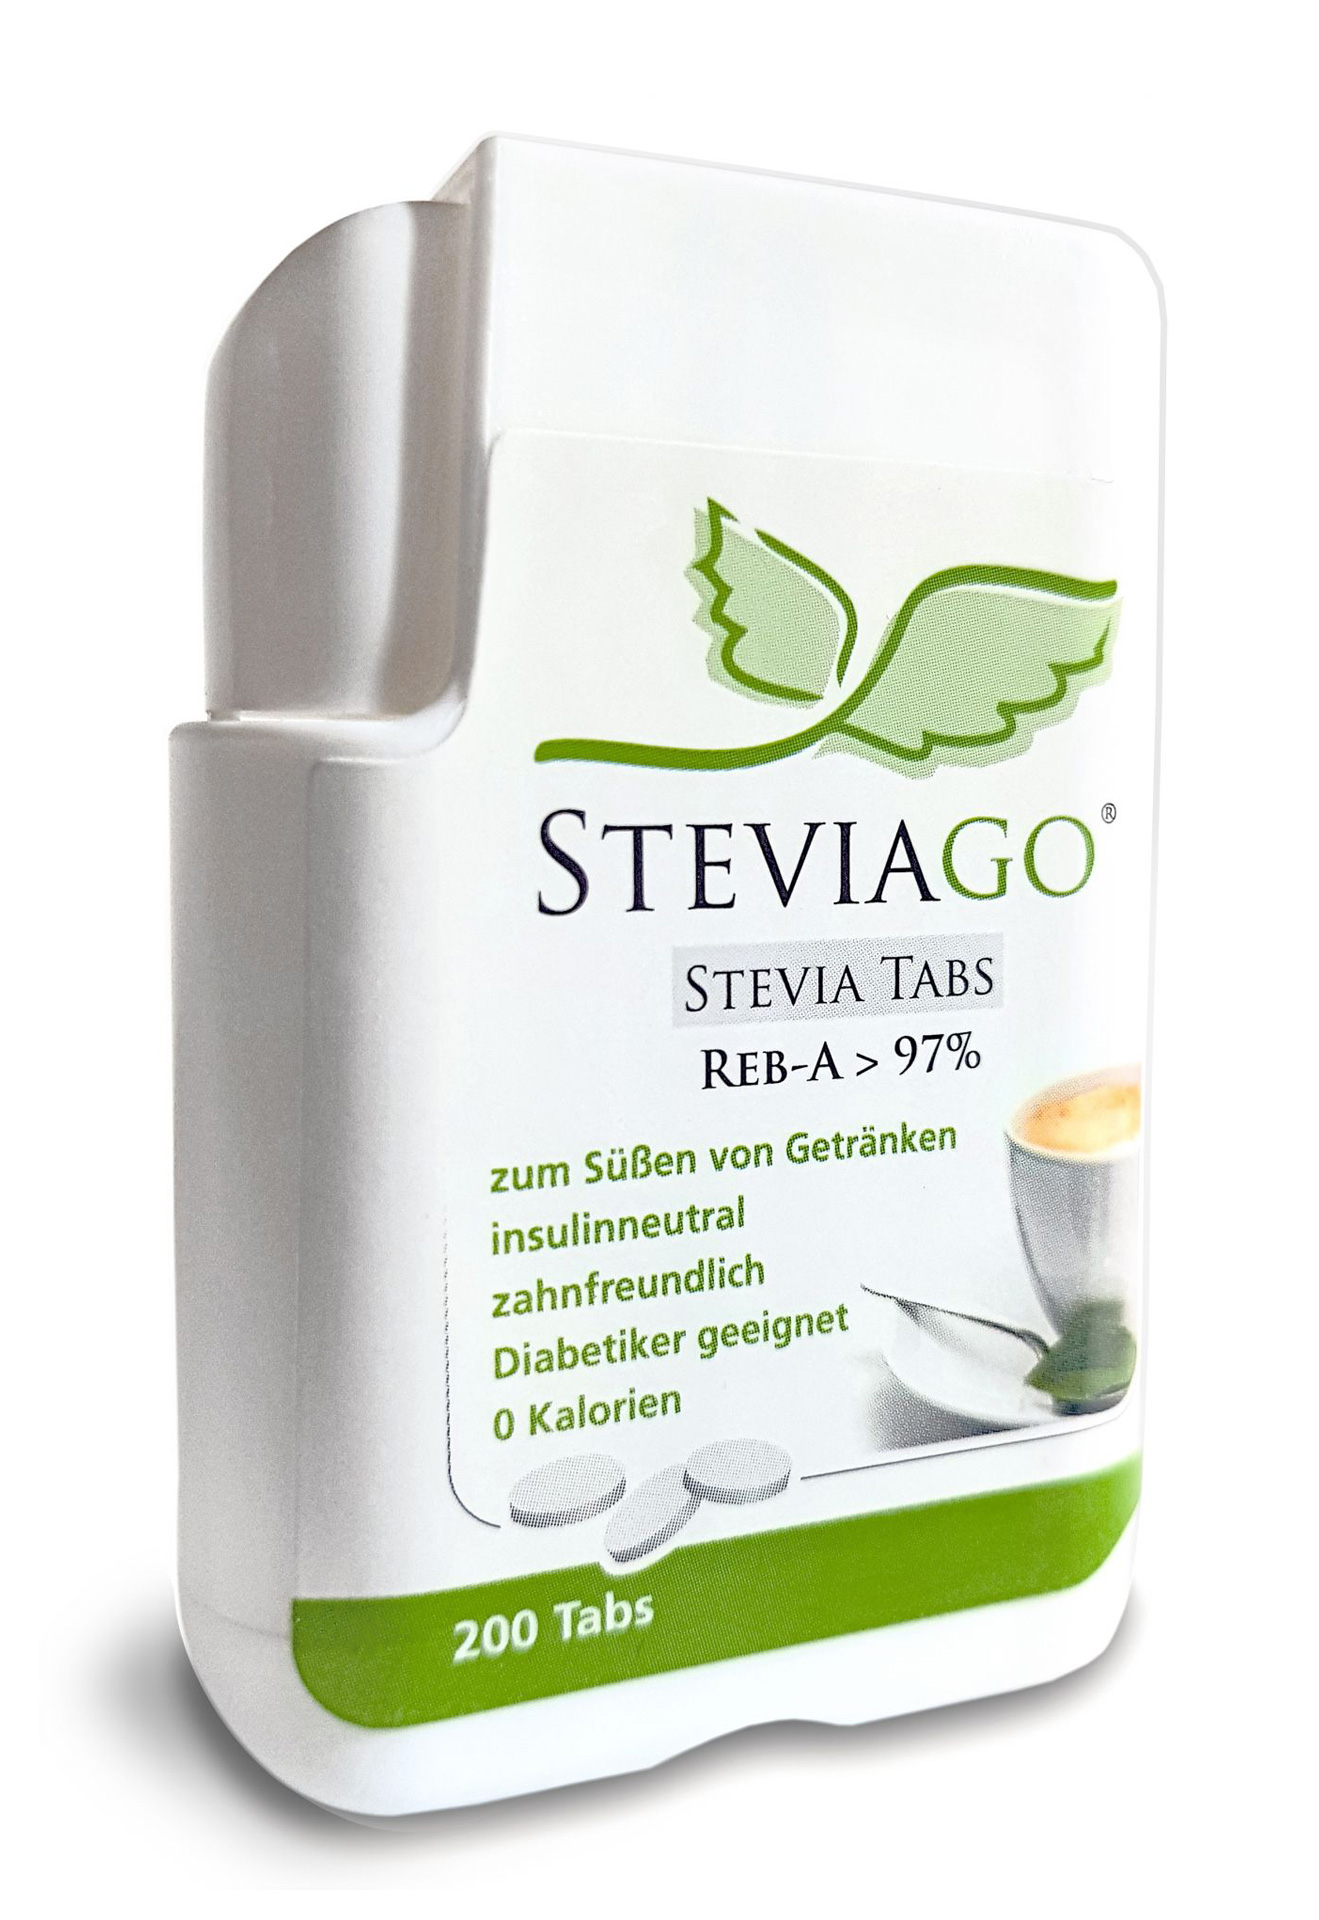 Stevia Tabs im Tabspender (200 Tabs)